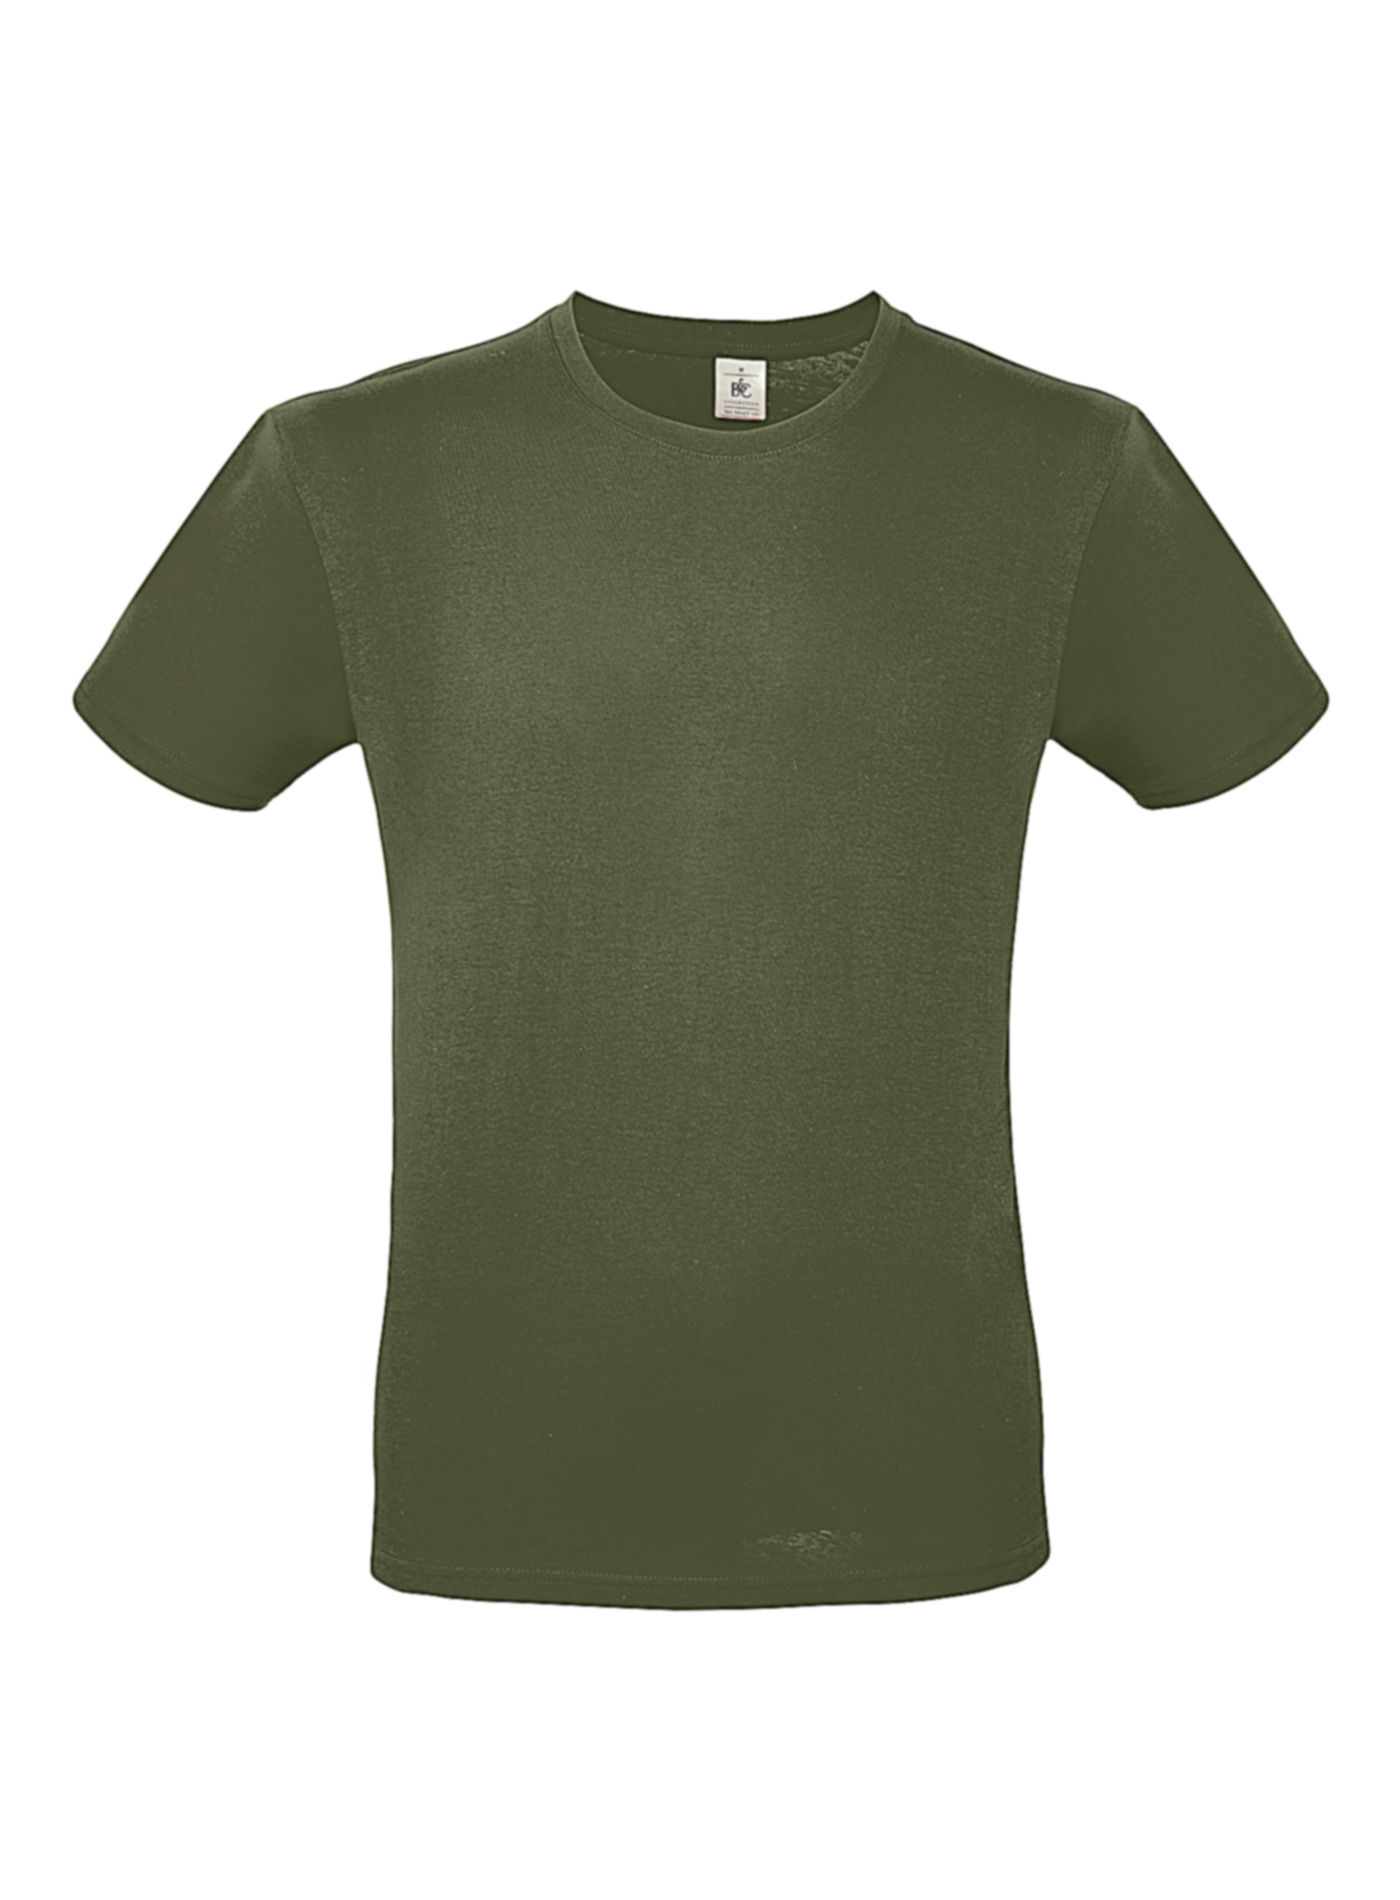 Pánské tričko B&C - Olivově zelená L